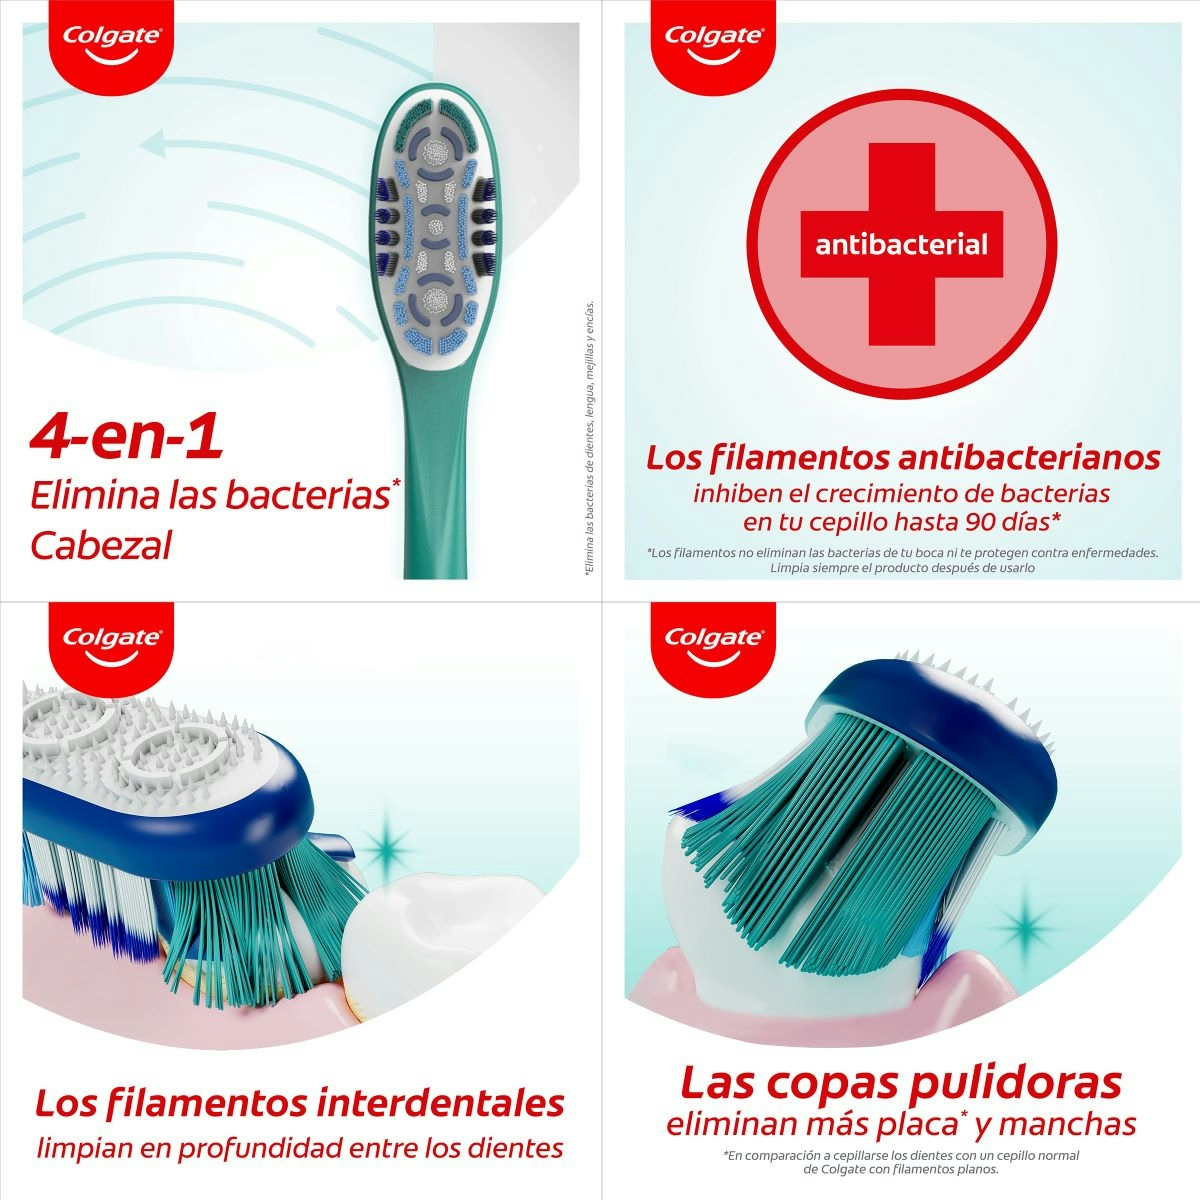 Cepillo de dientes Colgate 360 elimina las bacterias bucales, medio